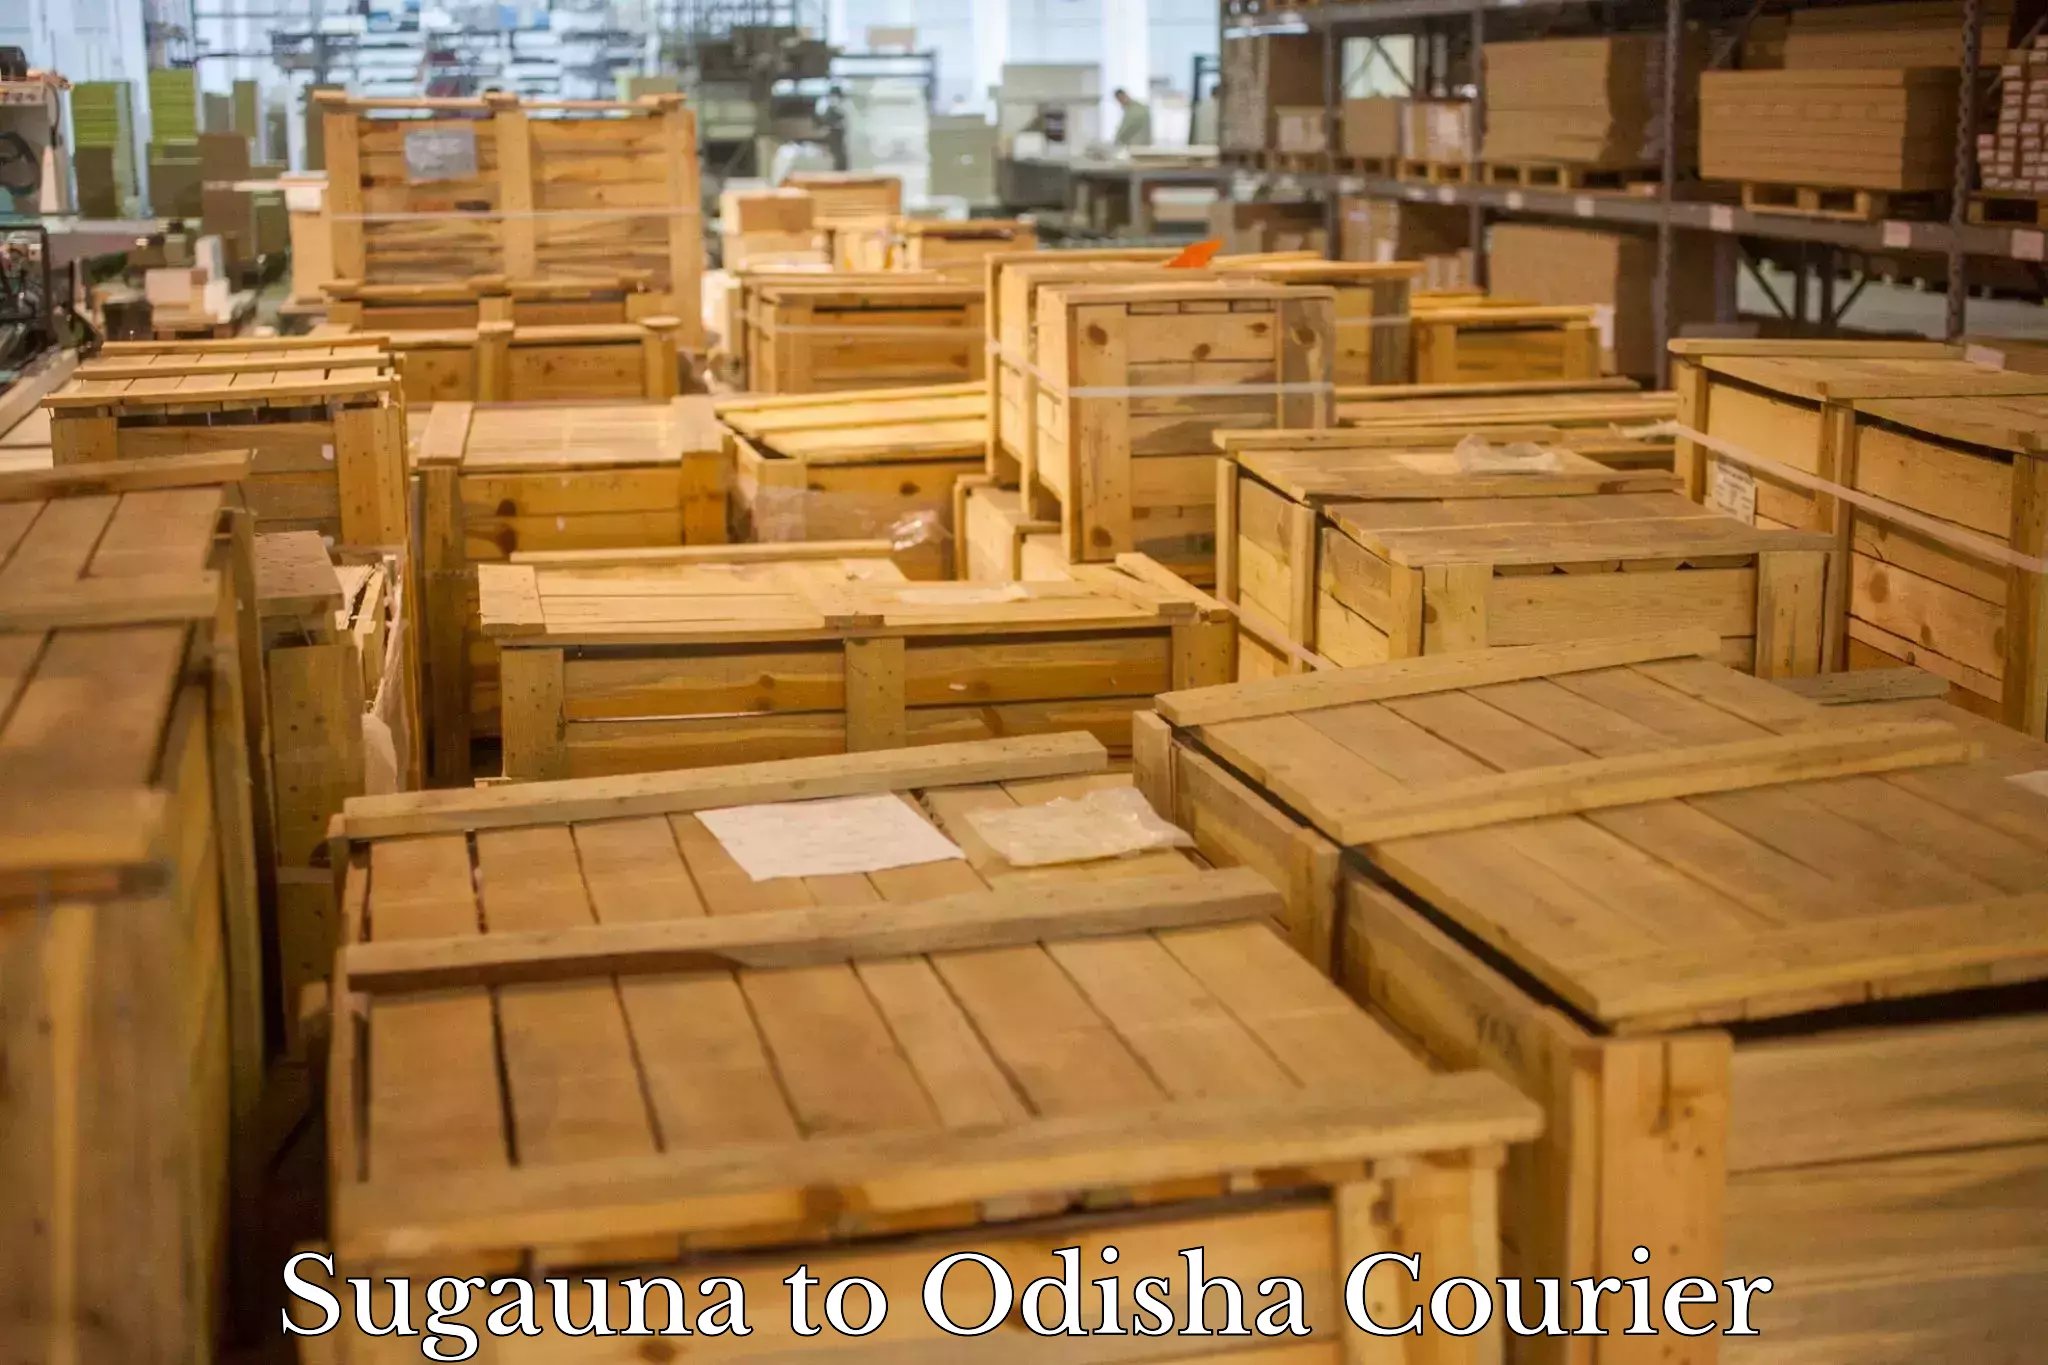 Courier rate comparison in Sugauna to Joda